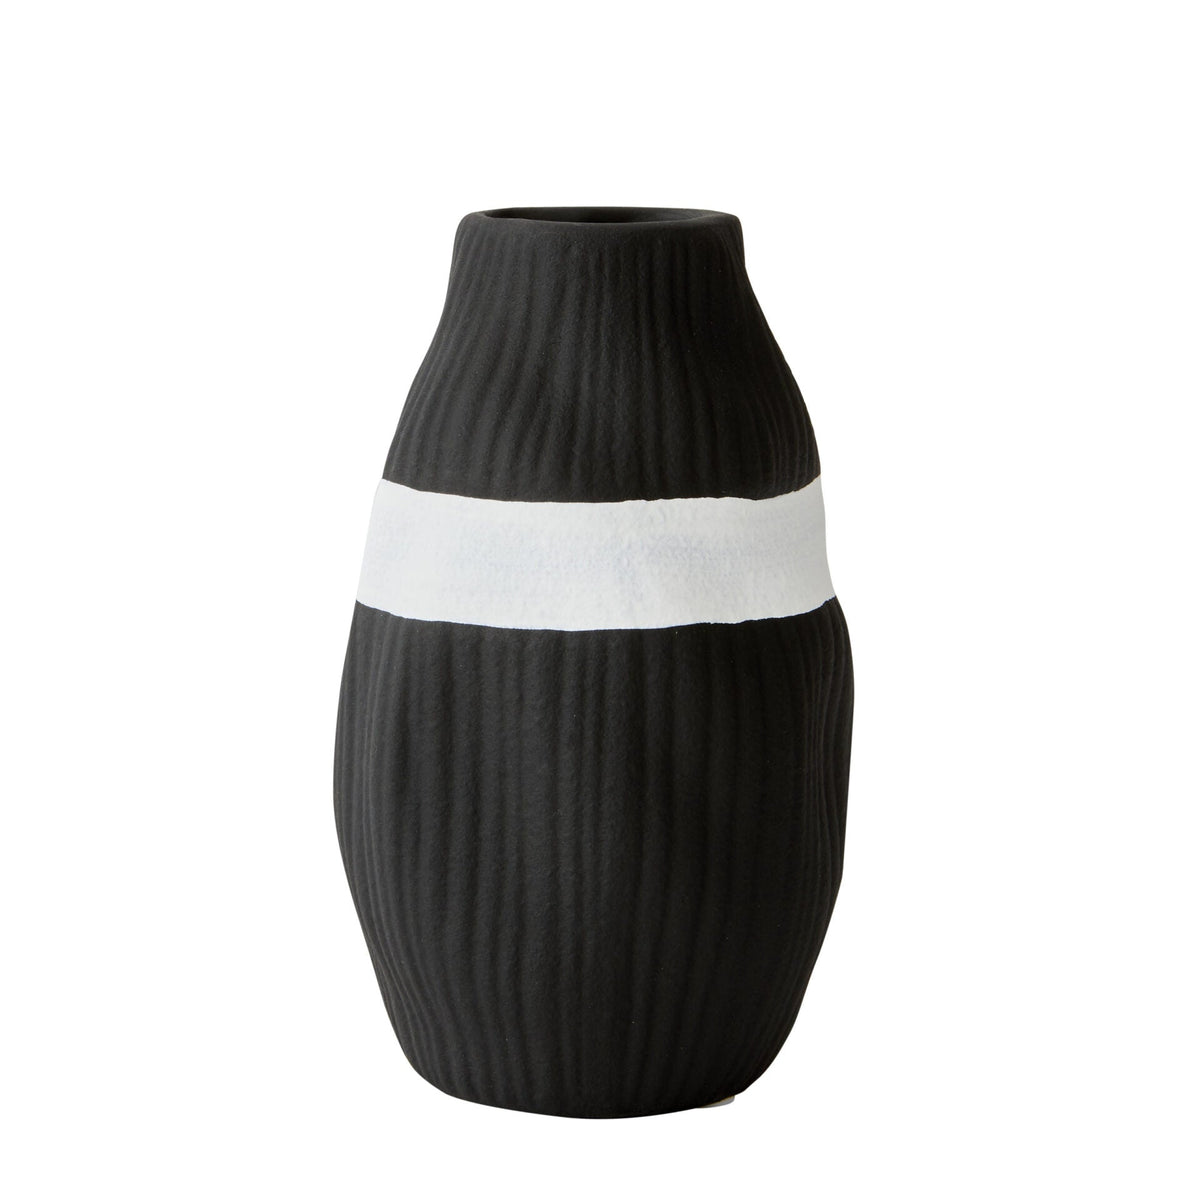 Monochrome Glazed Ceramic Stripe Vase - Black